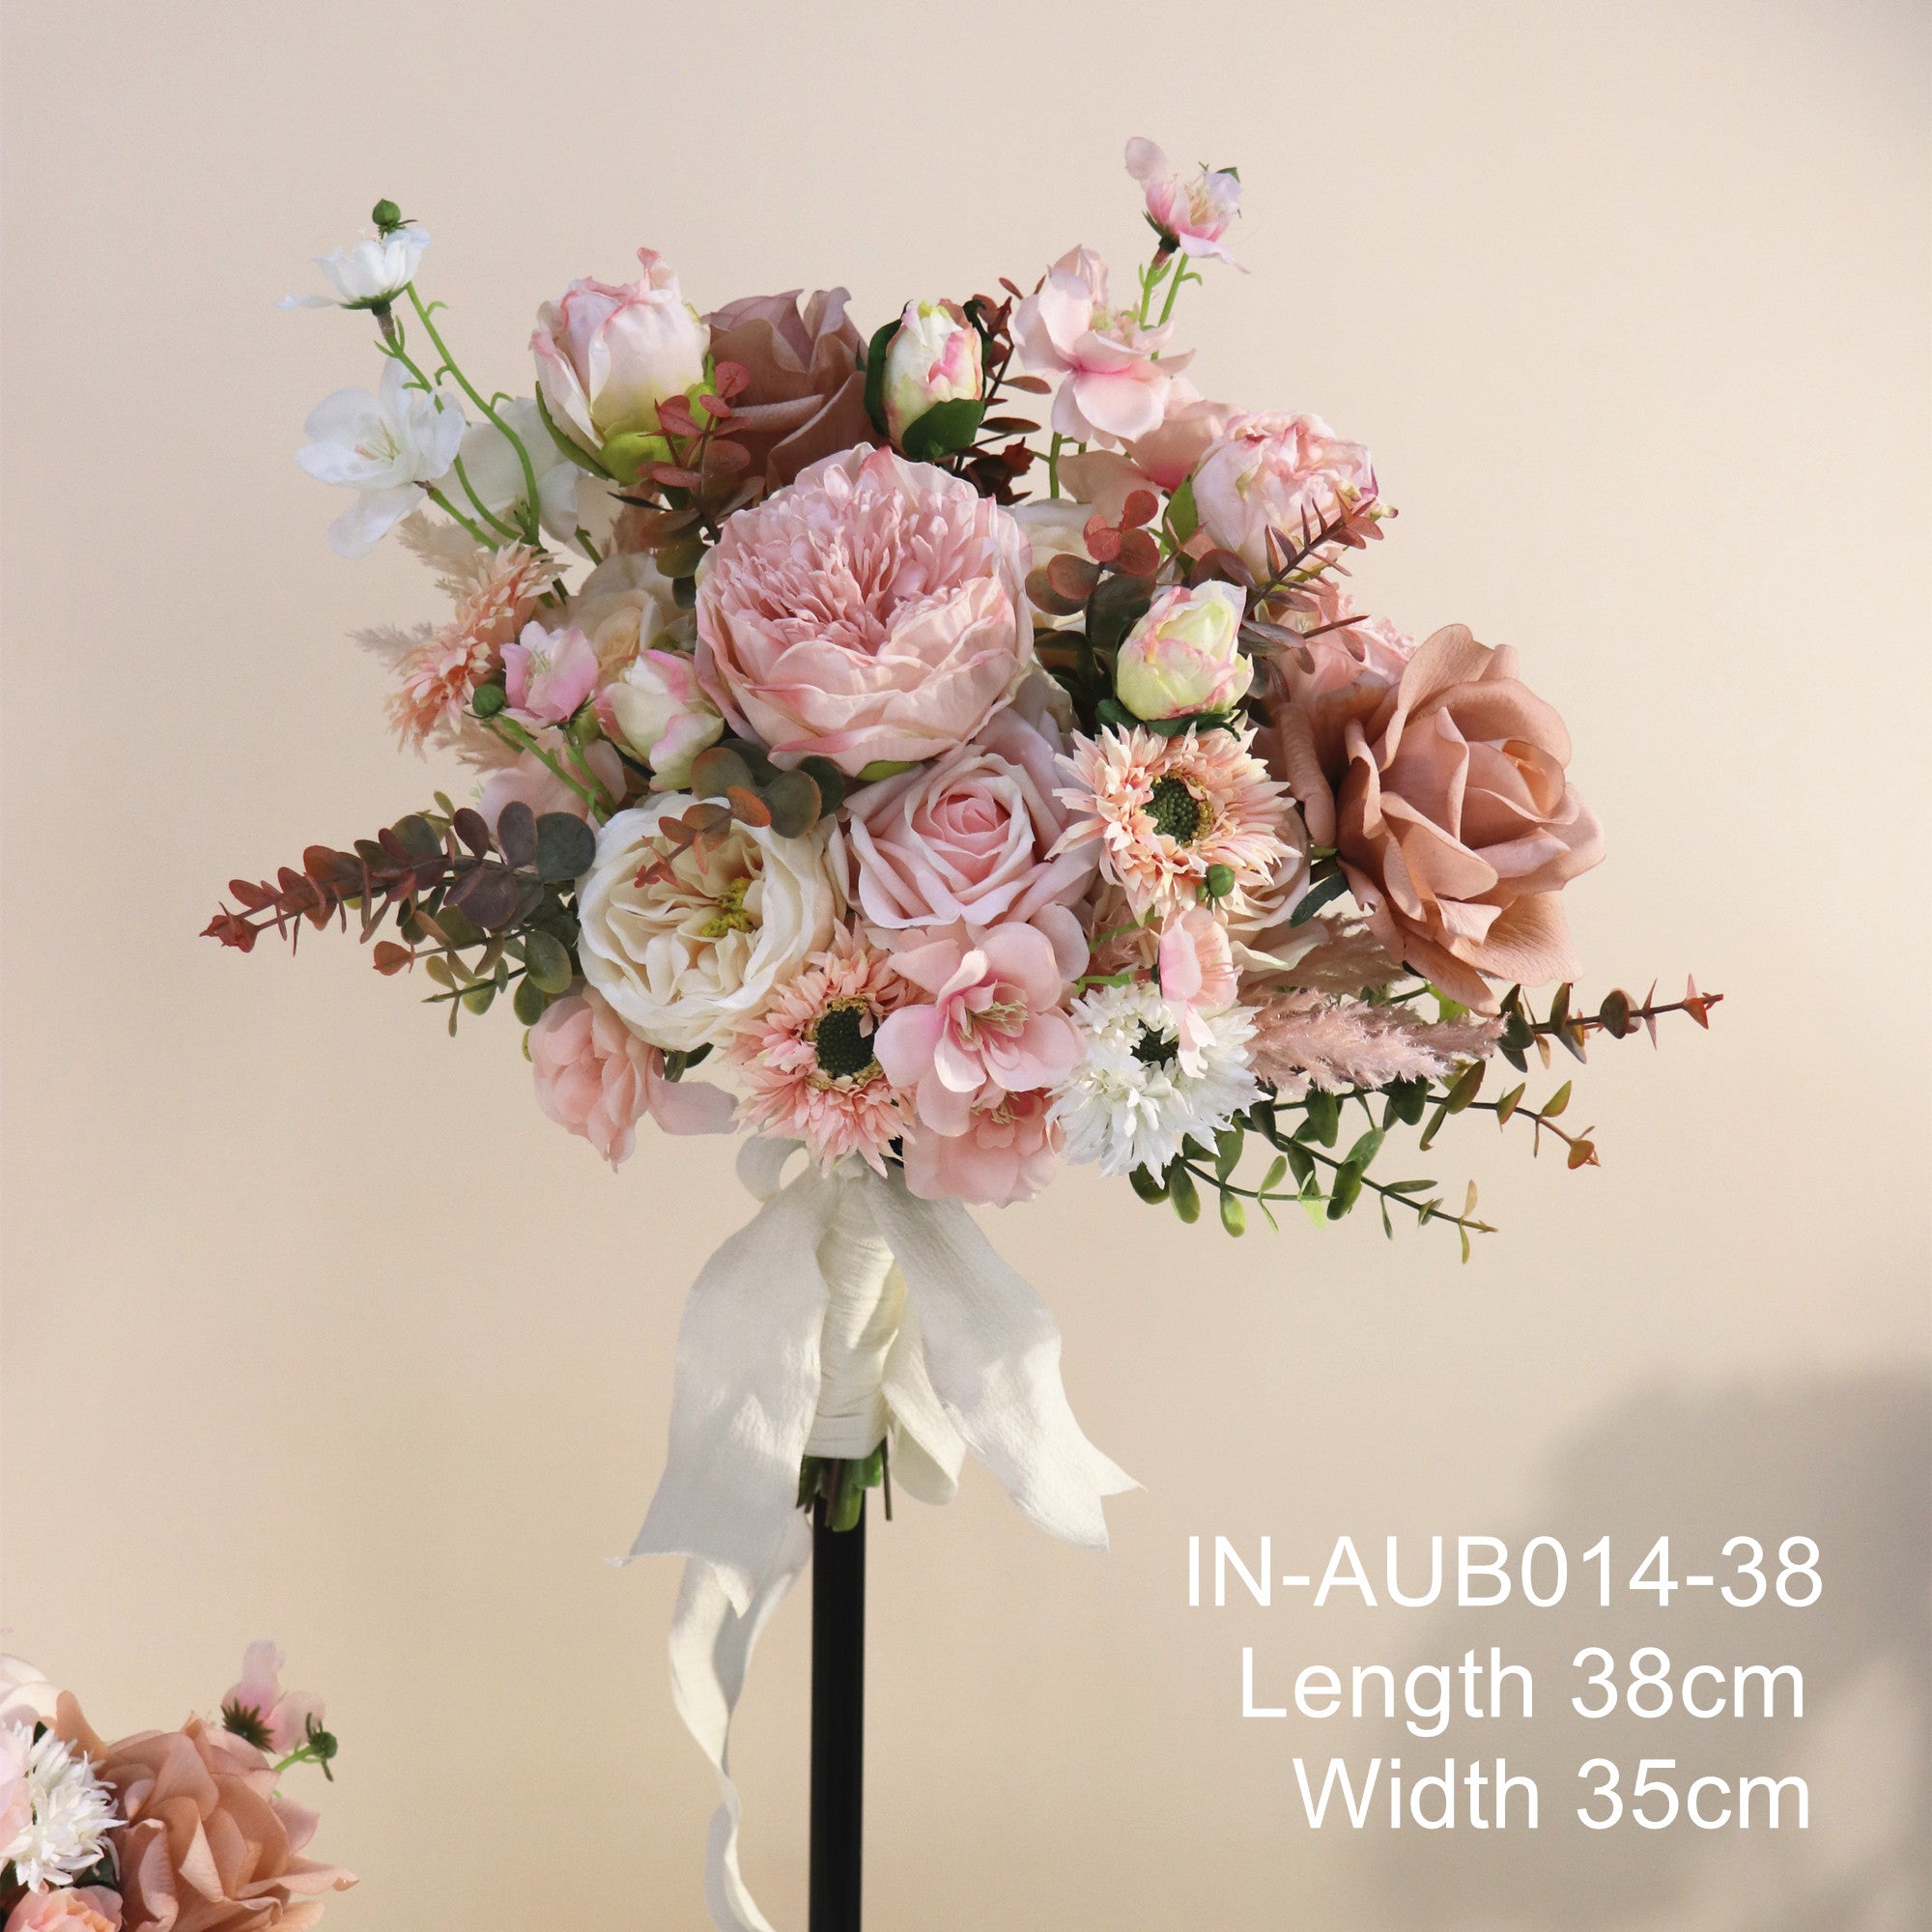 Blush Blooms - Bouquets (3 sizes)